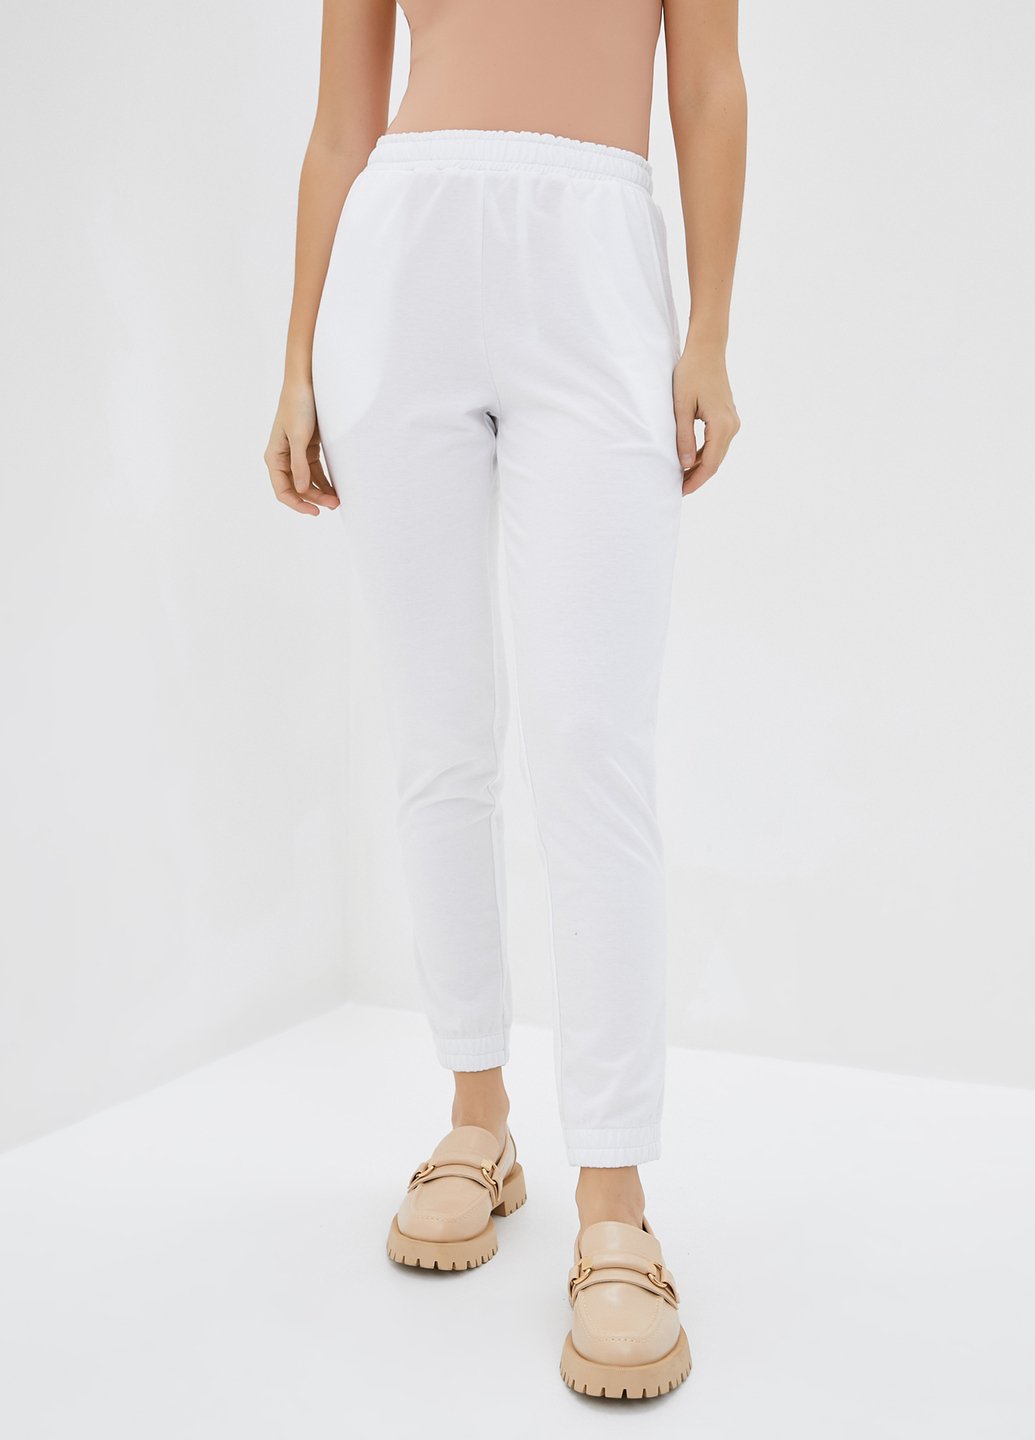 Купити Спортивні штани жіночі Merlini Сіті 600000056 - Білий, 42-44 в інтернет-магазині